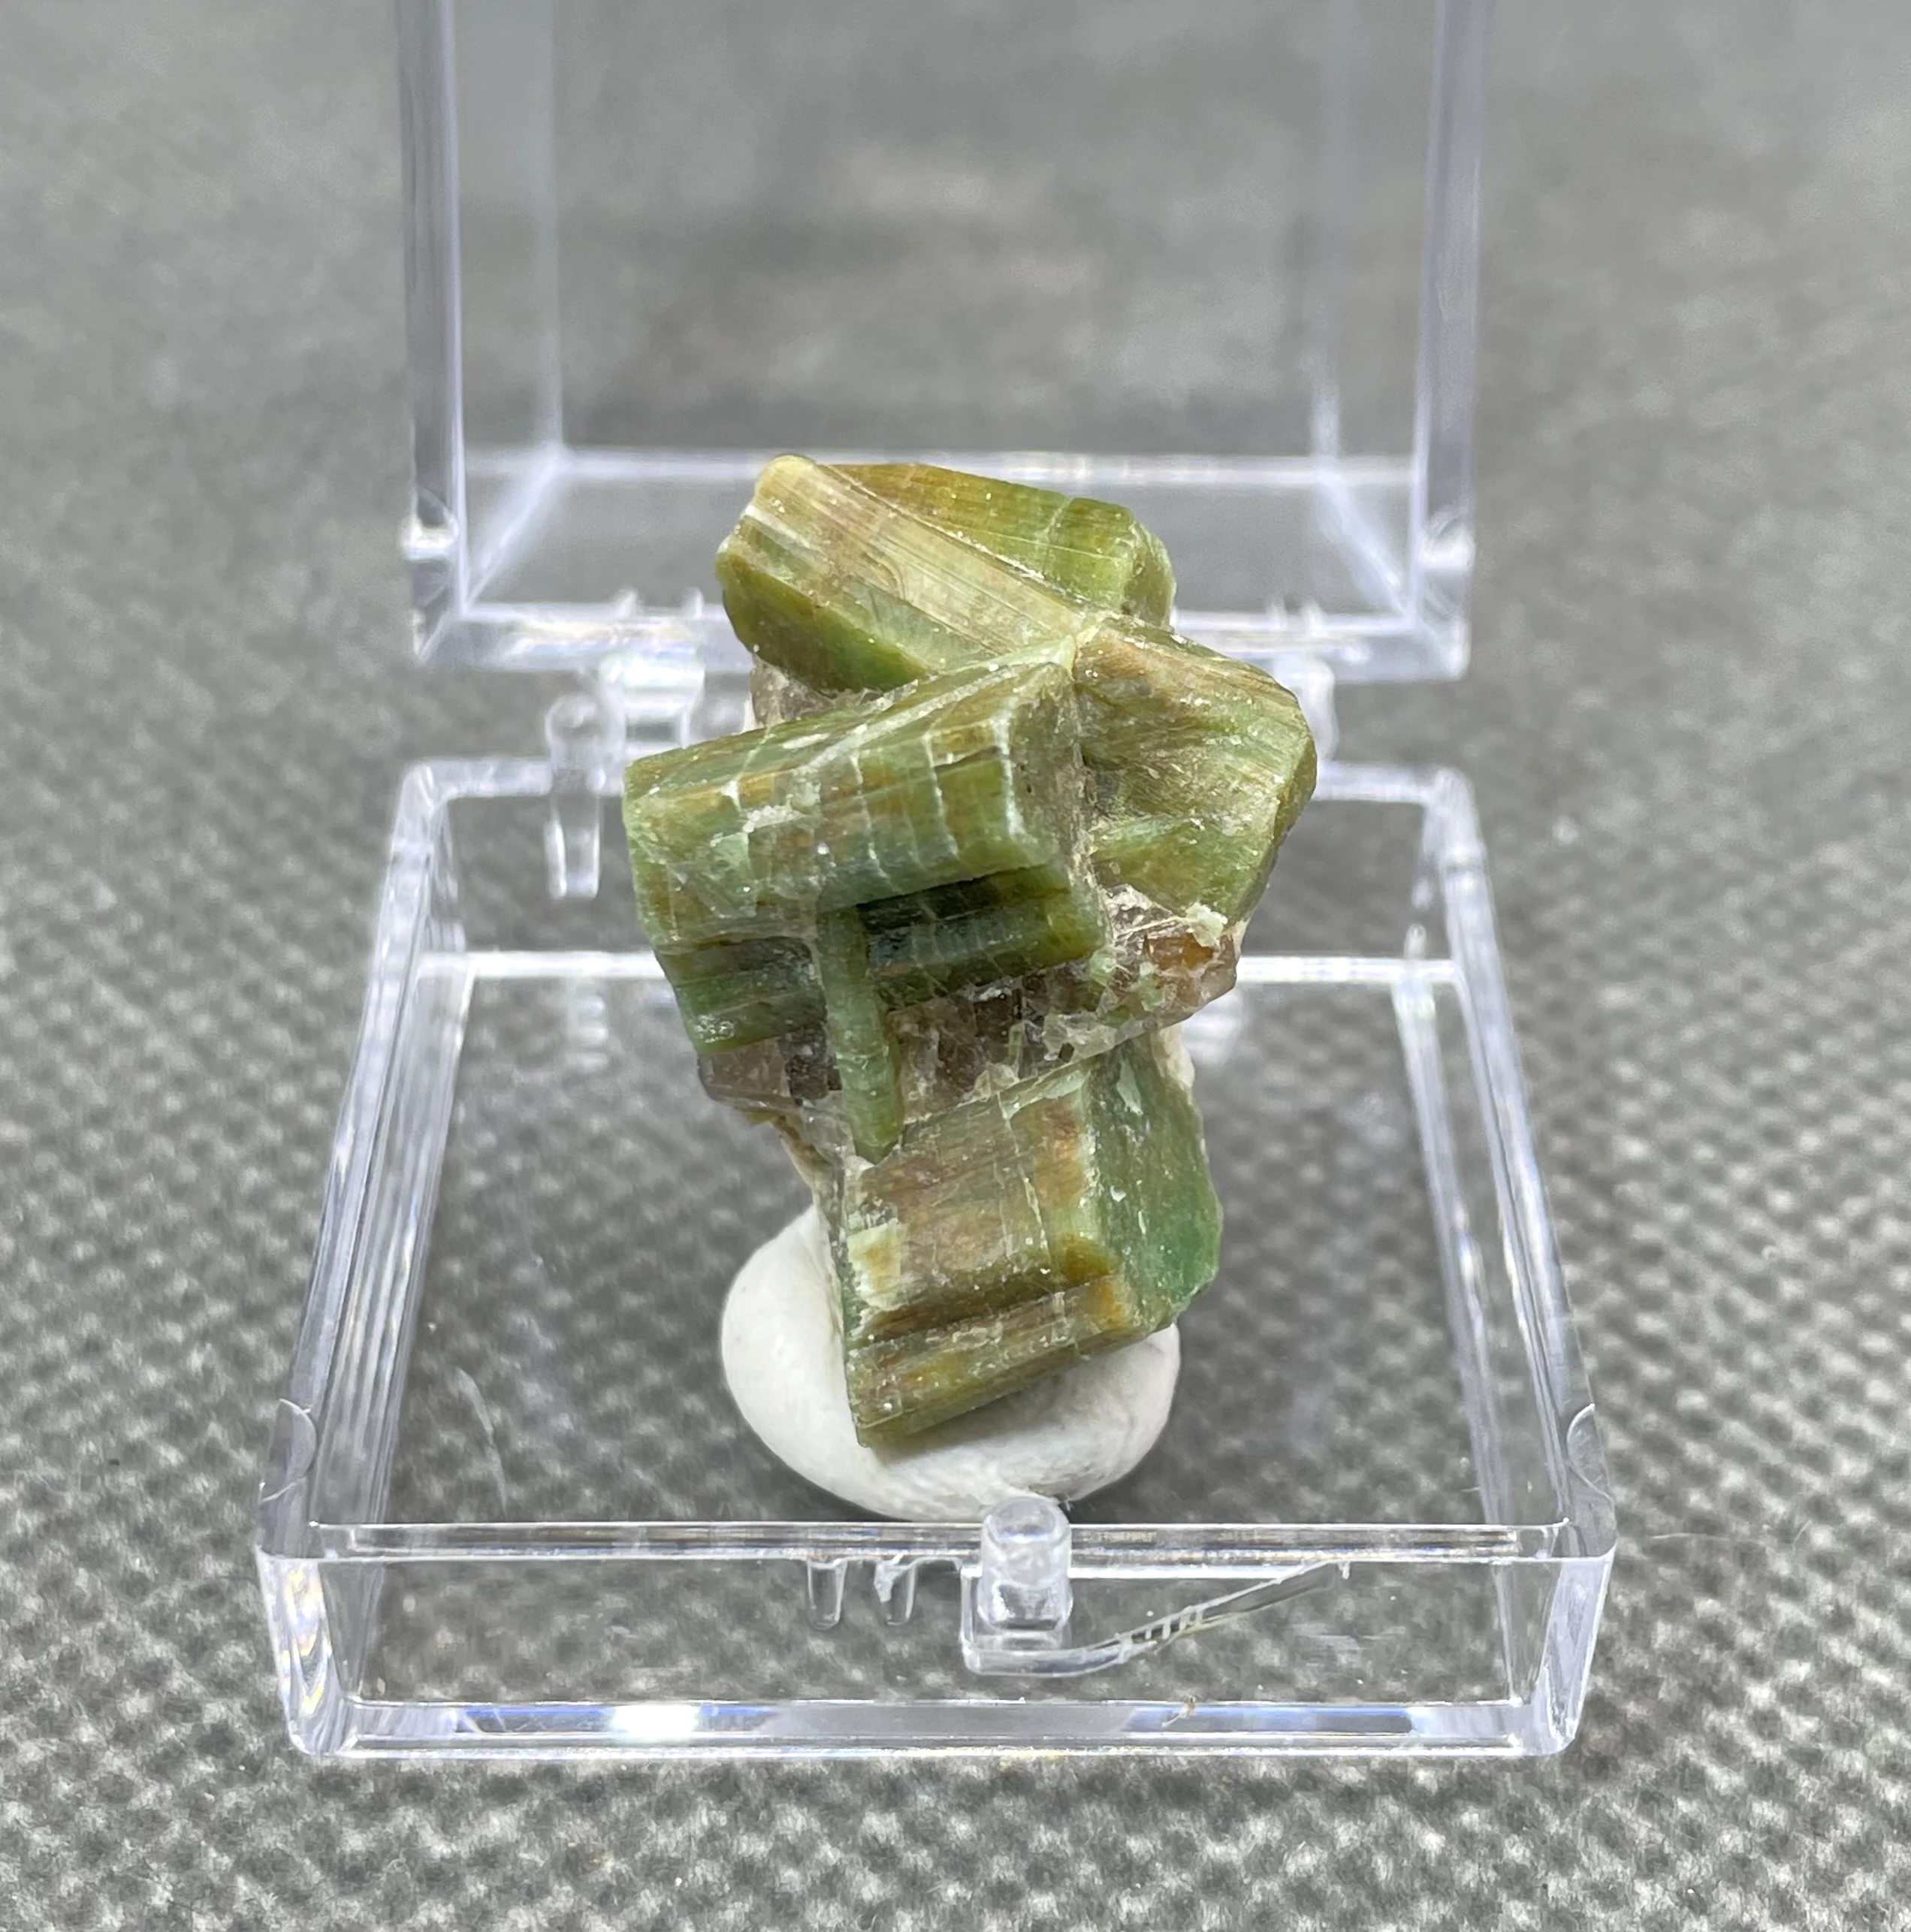 ЛУЧШИЙ! 100% натуральный зеленый изумруд минерал драгоценный камень образцы кристаллов драгоценного качества камни и кристаллы кристаллы кварца (размер коробки 3,4 см) 1